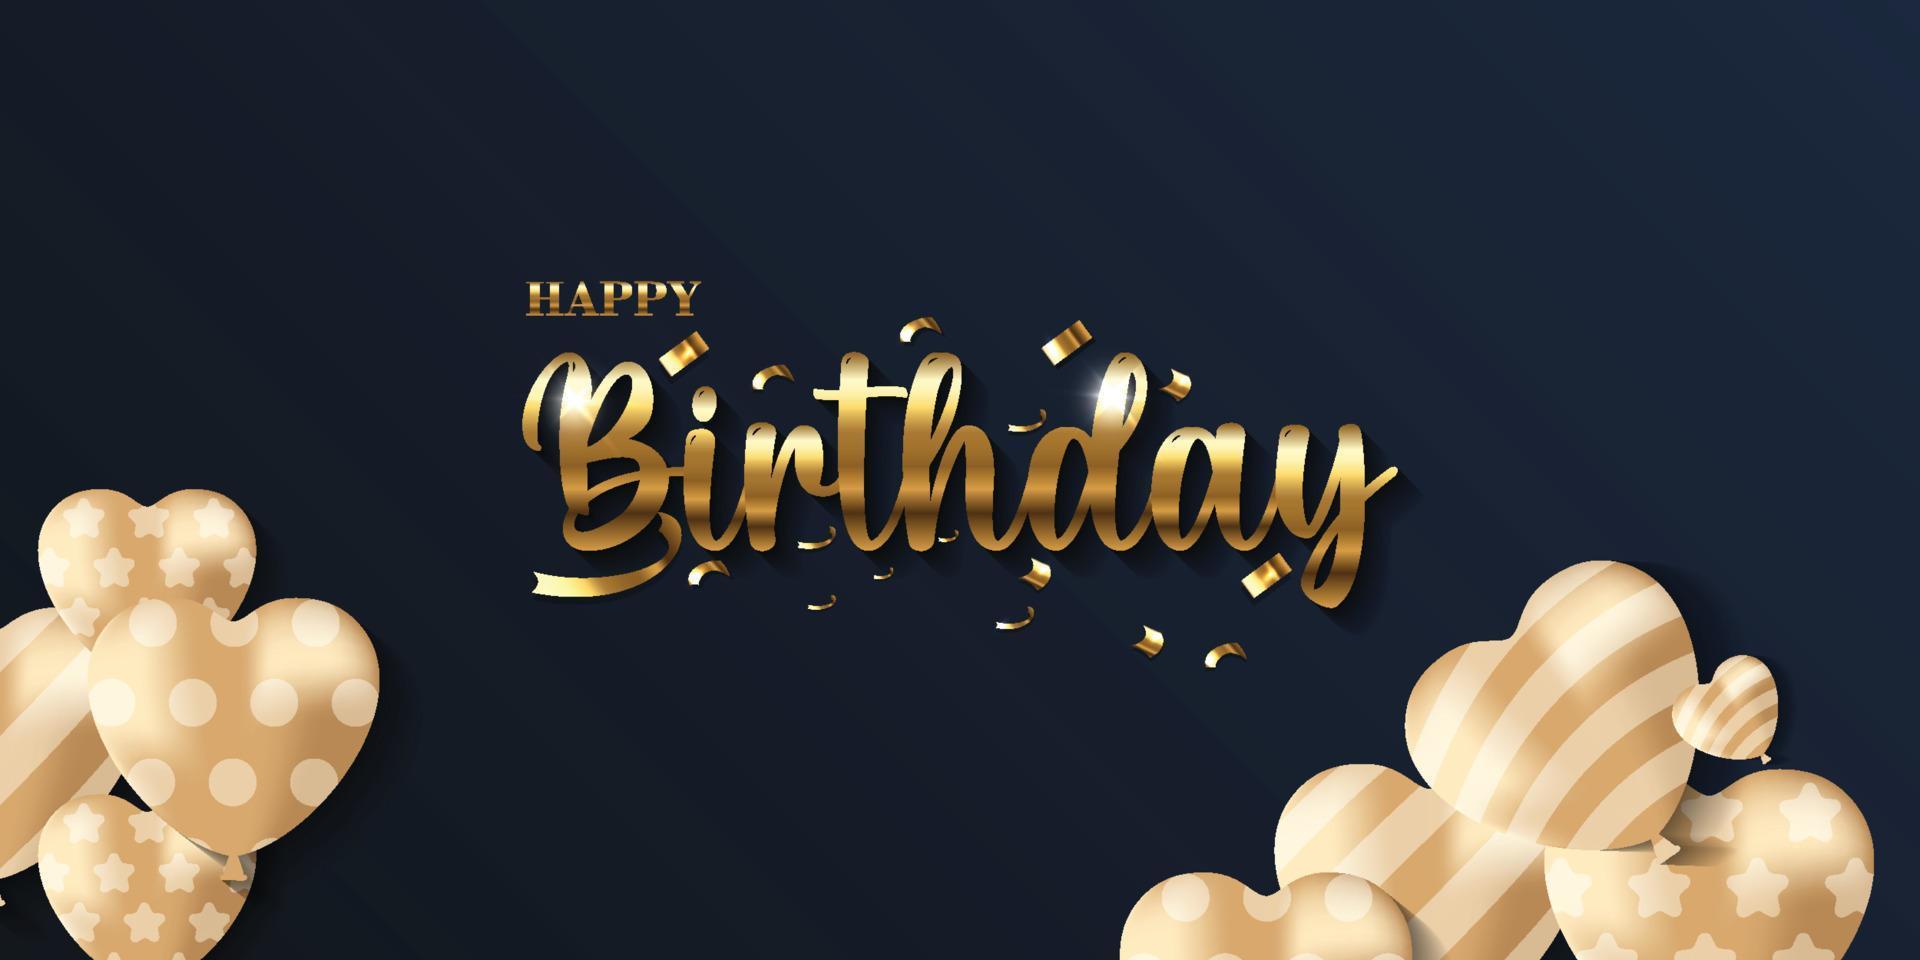 alles Gute zum Geburtstag Hintergrund mit 3D-Gold-Schriftzug und goldener Herzform auf schwarzem Hintergrund vektor